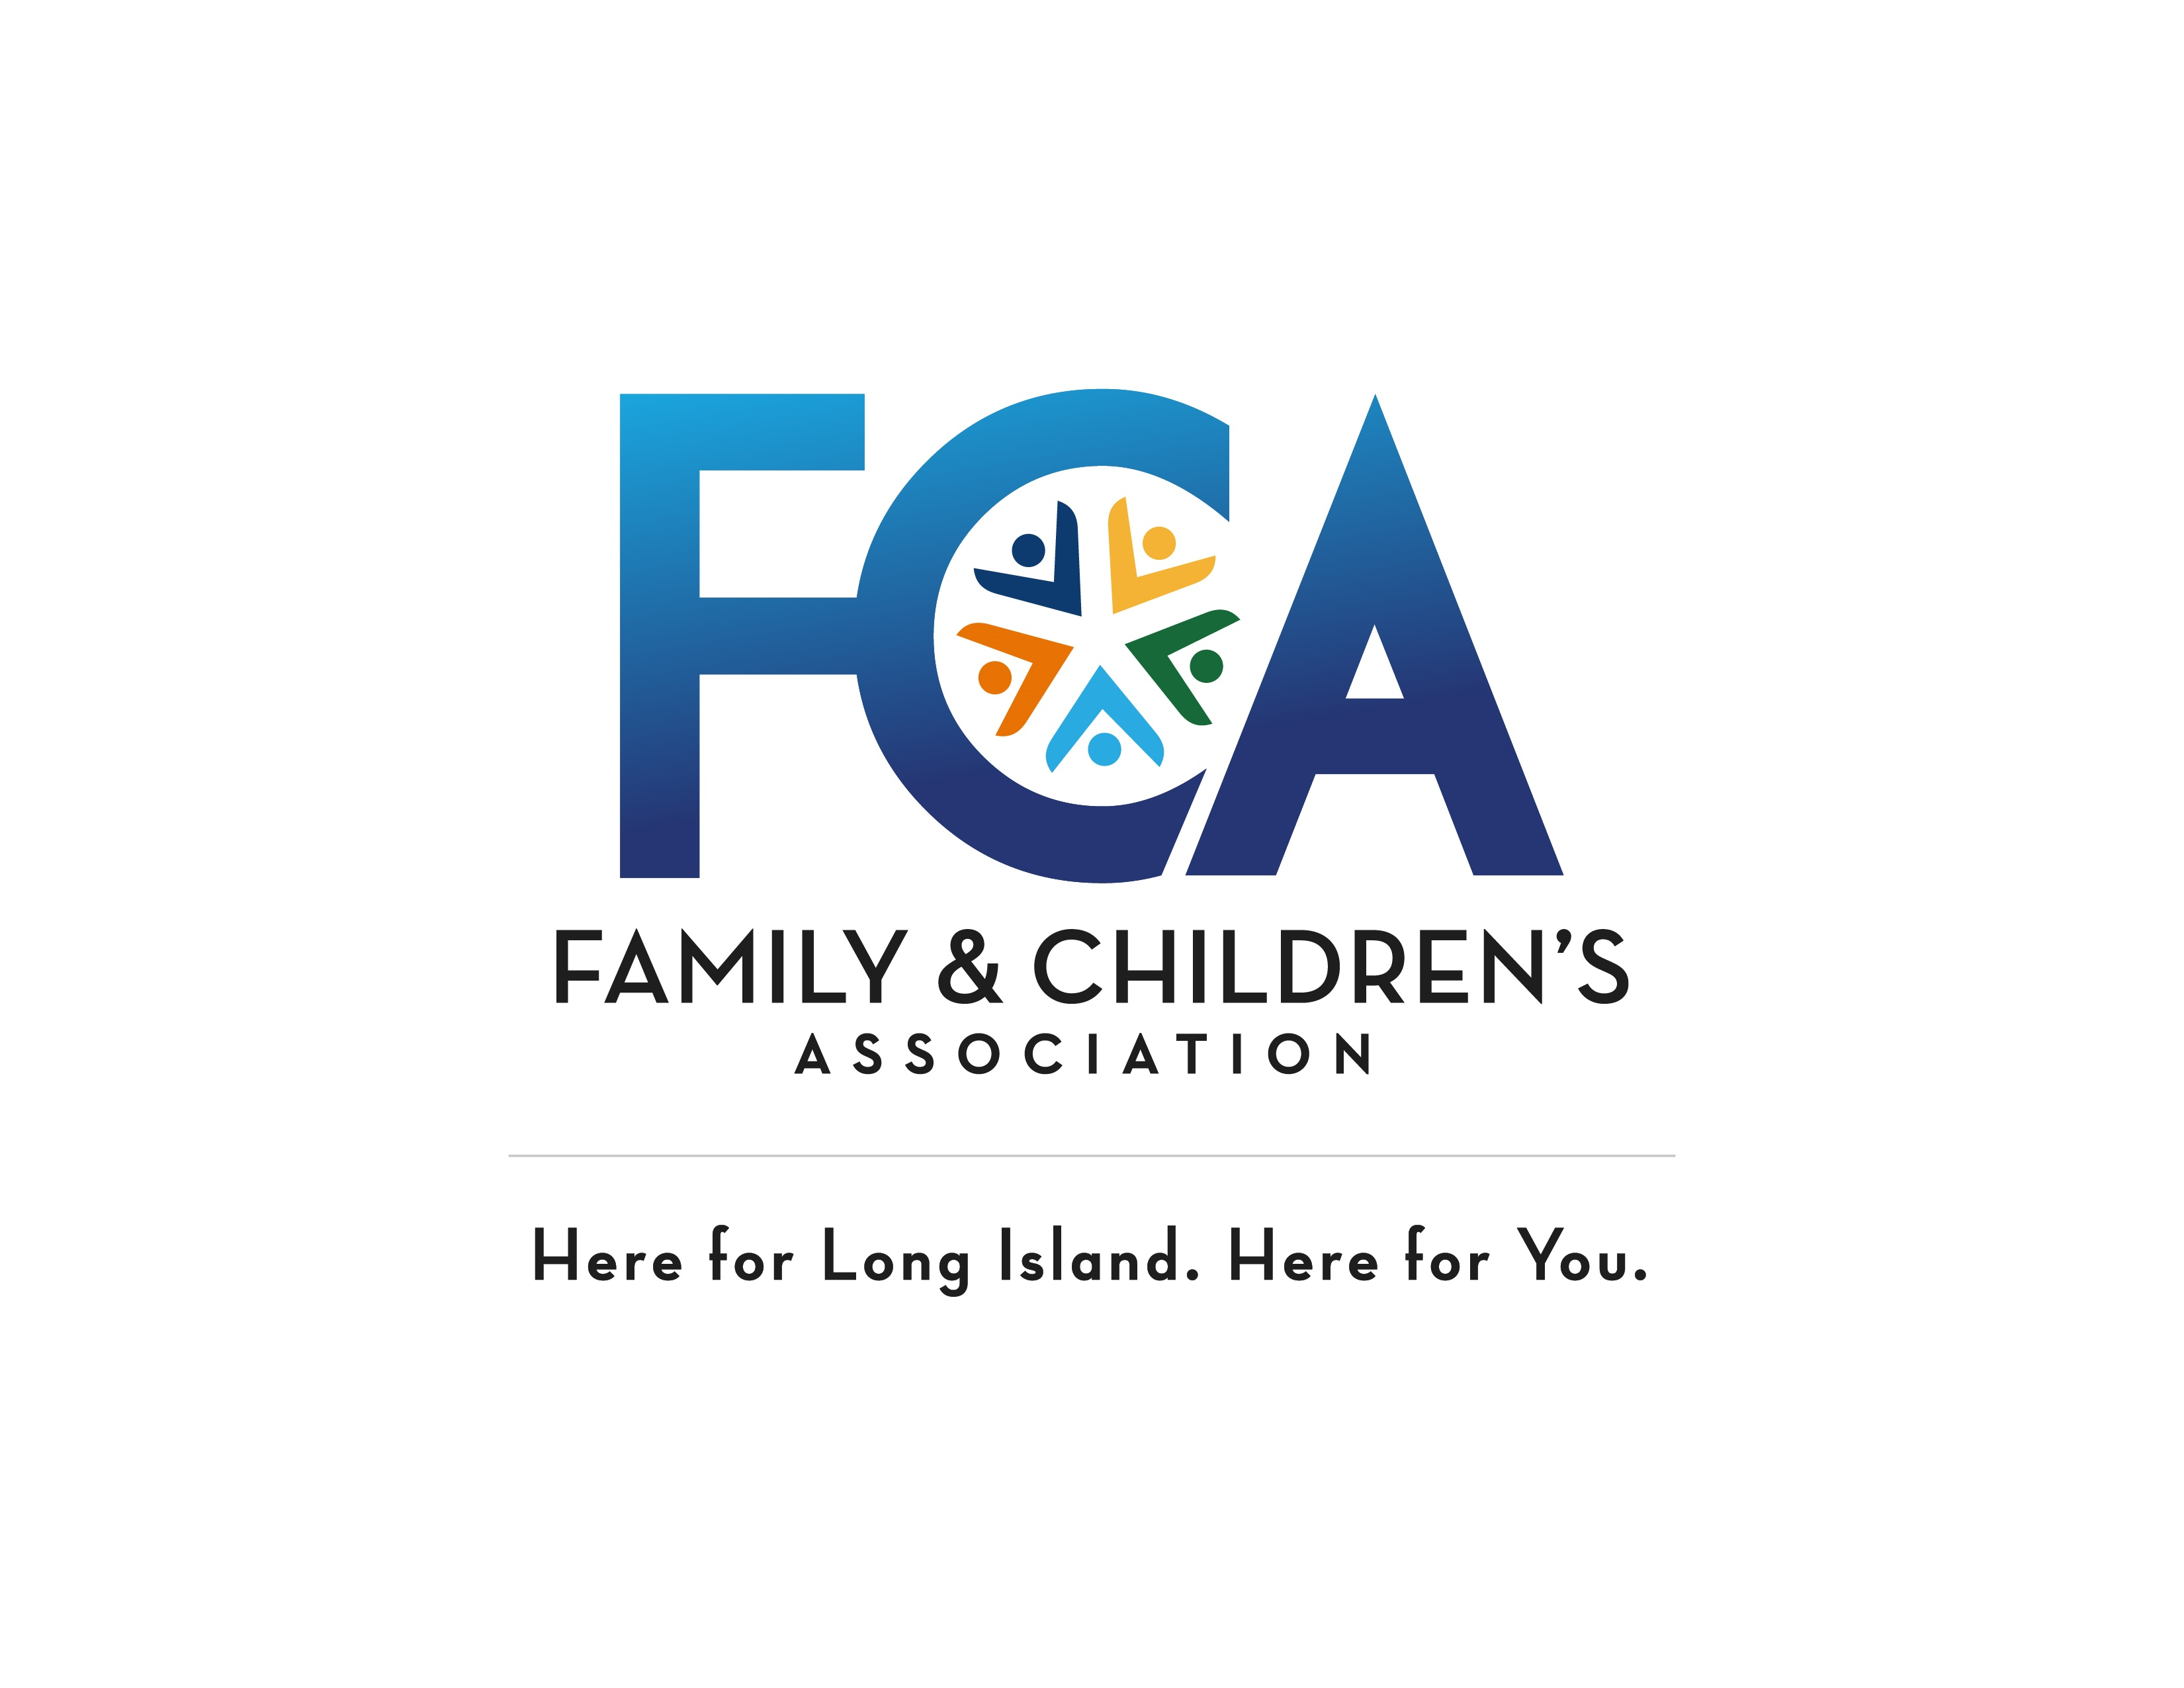 Family & Children's Association logo